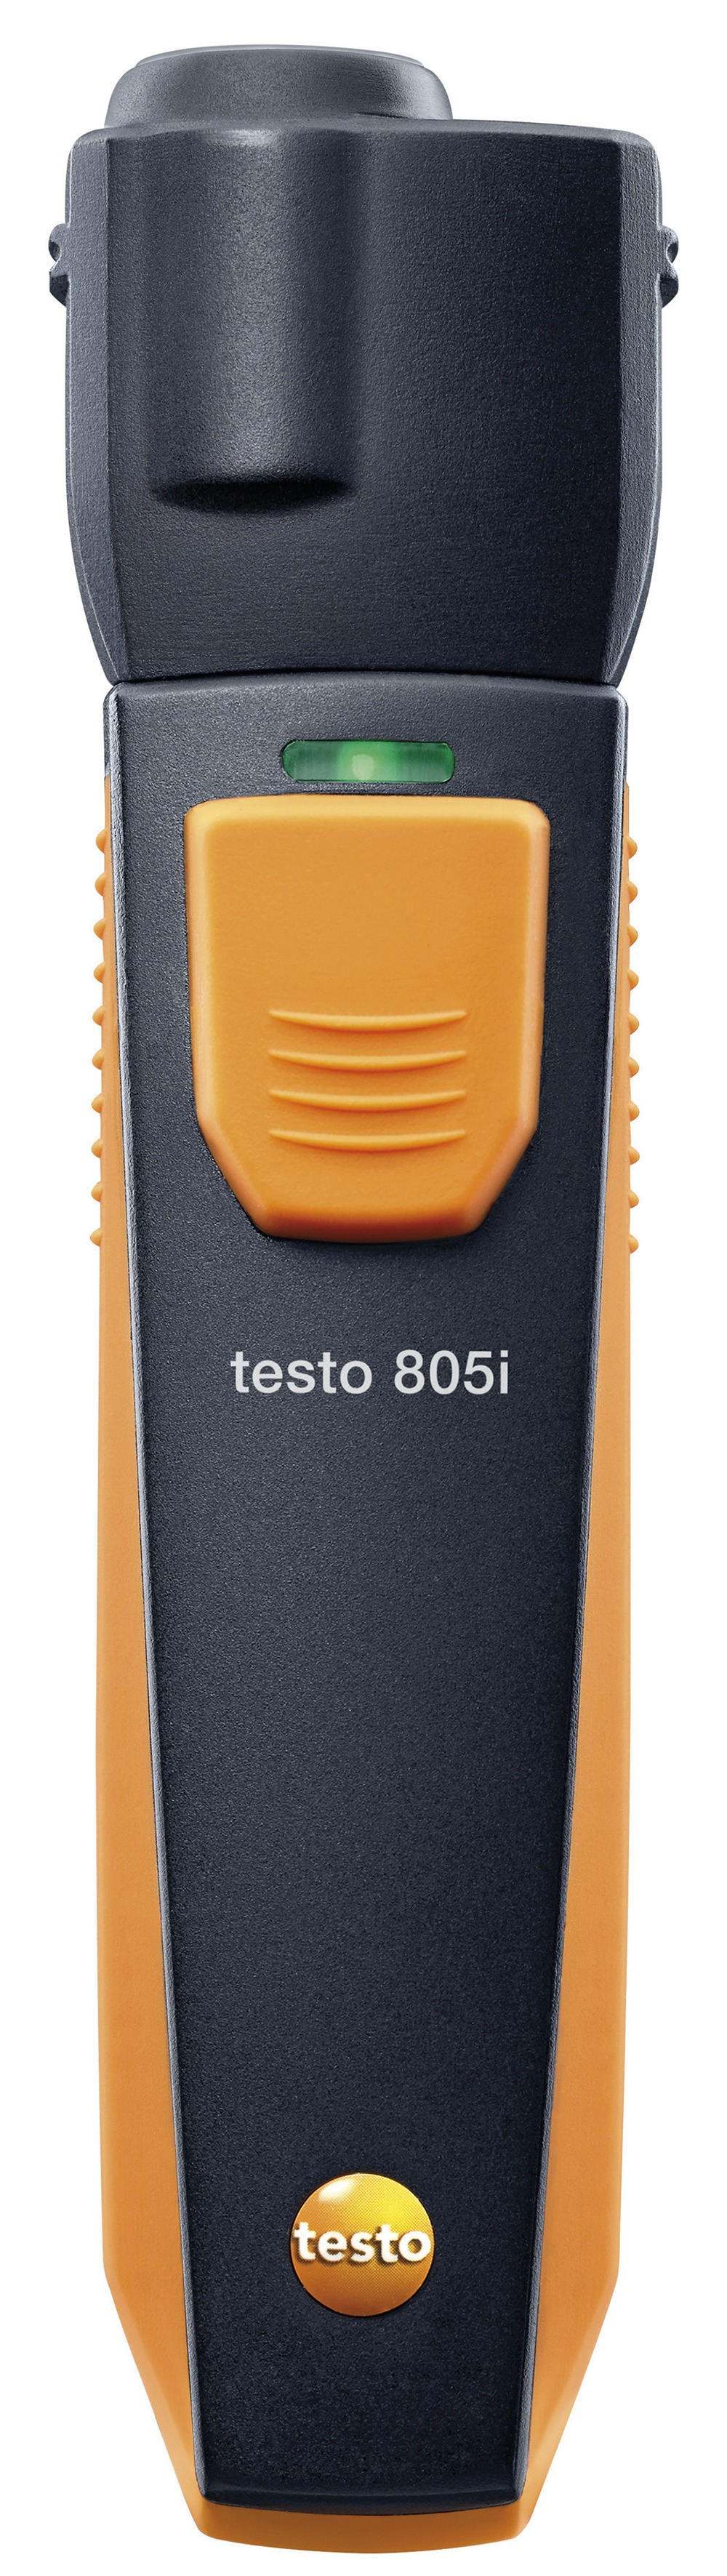 Ir-temperaturmåler testo 805i